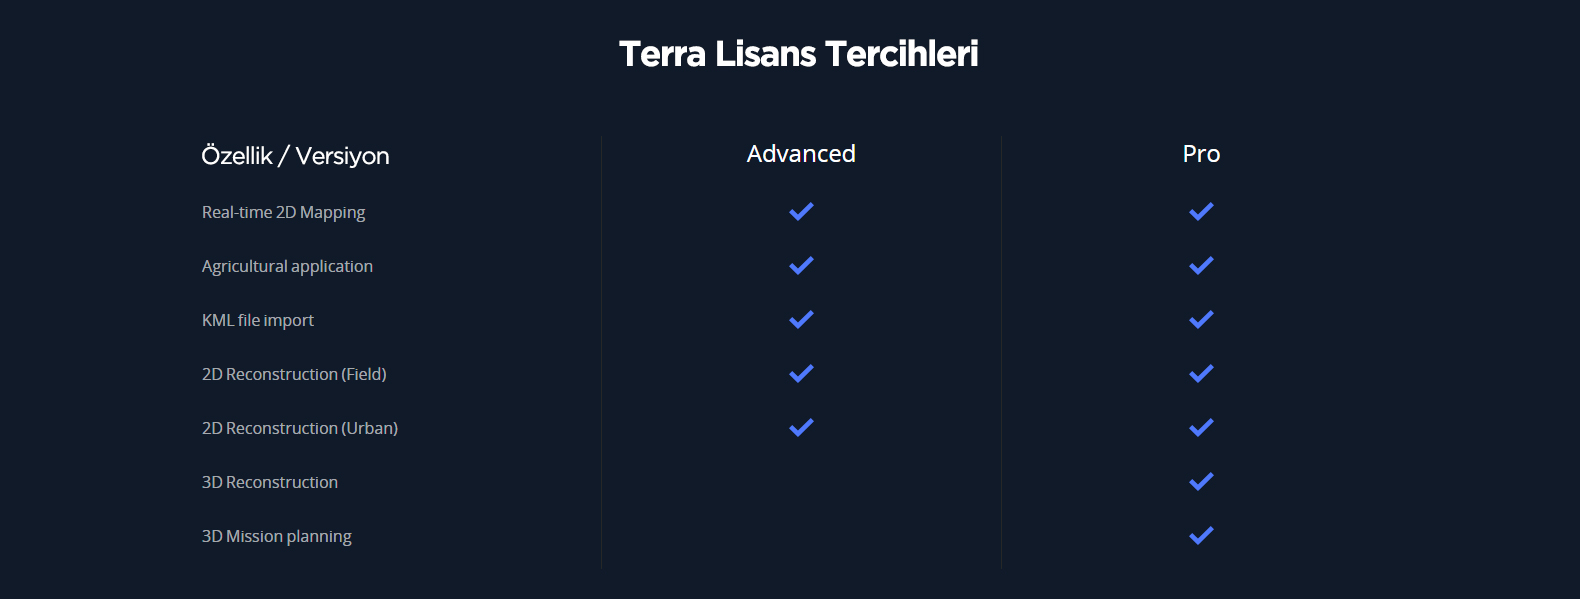 DJI Terra lisans tercihleri